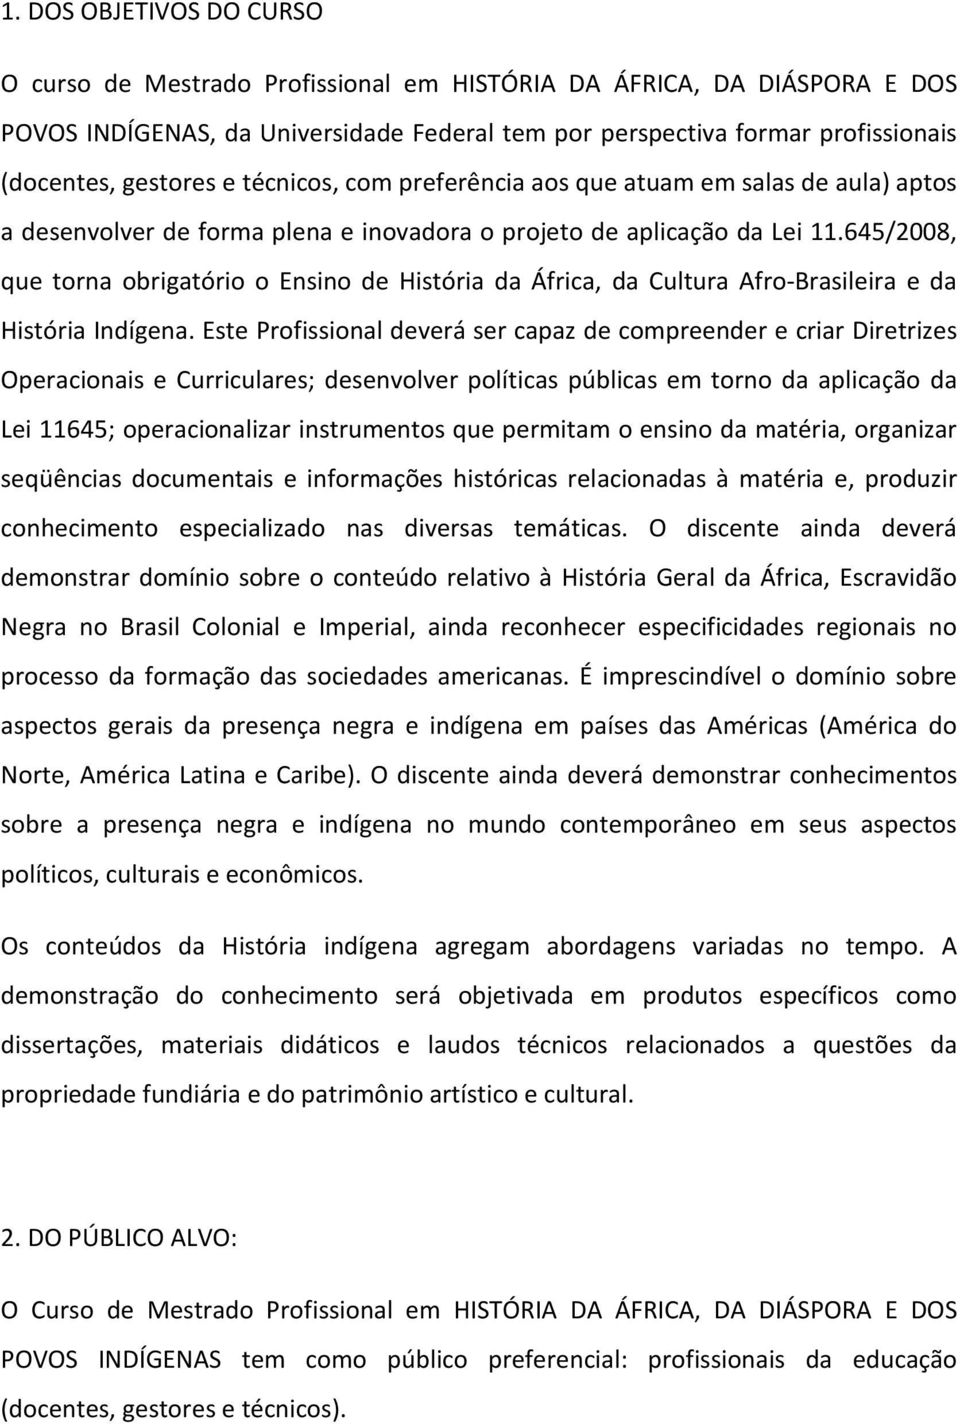 645/2008, que torna obrigatório o Ensino de História da África, da Cultura Afro-Brasileira e da História Indígena.